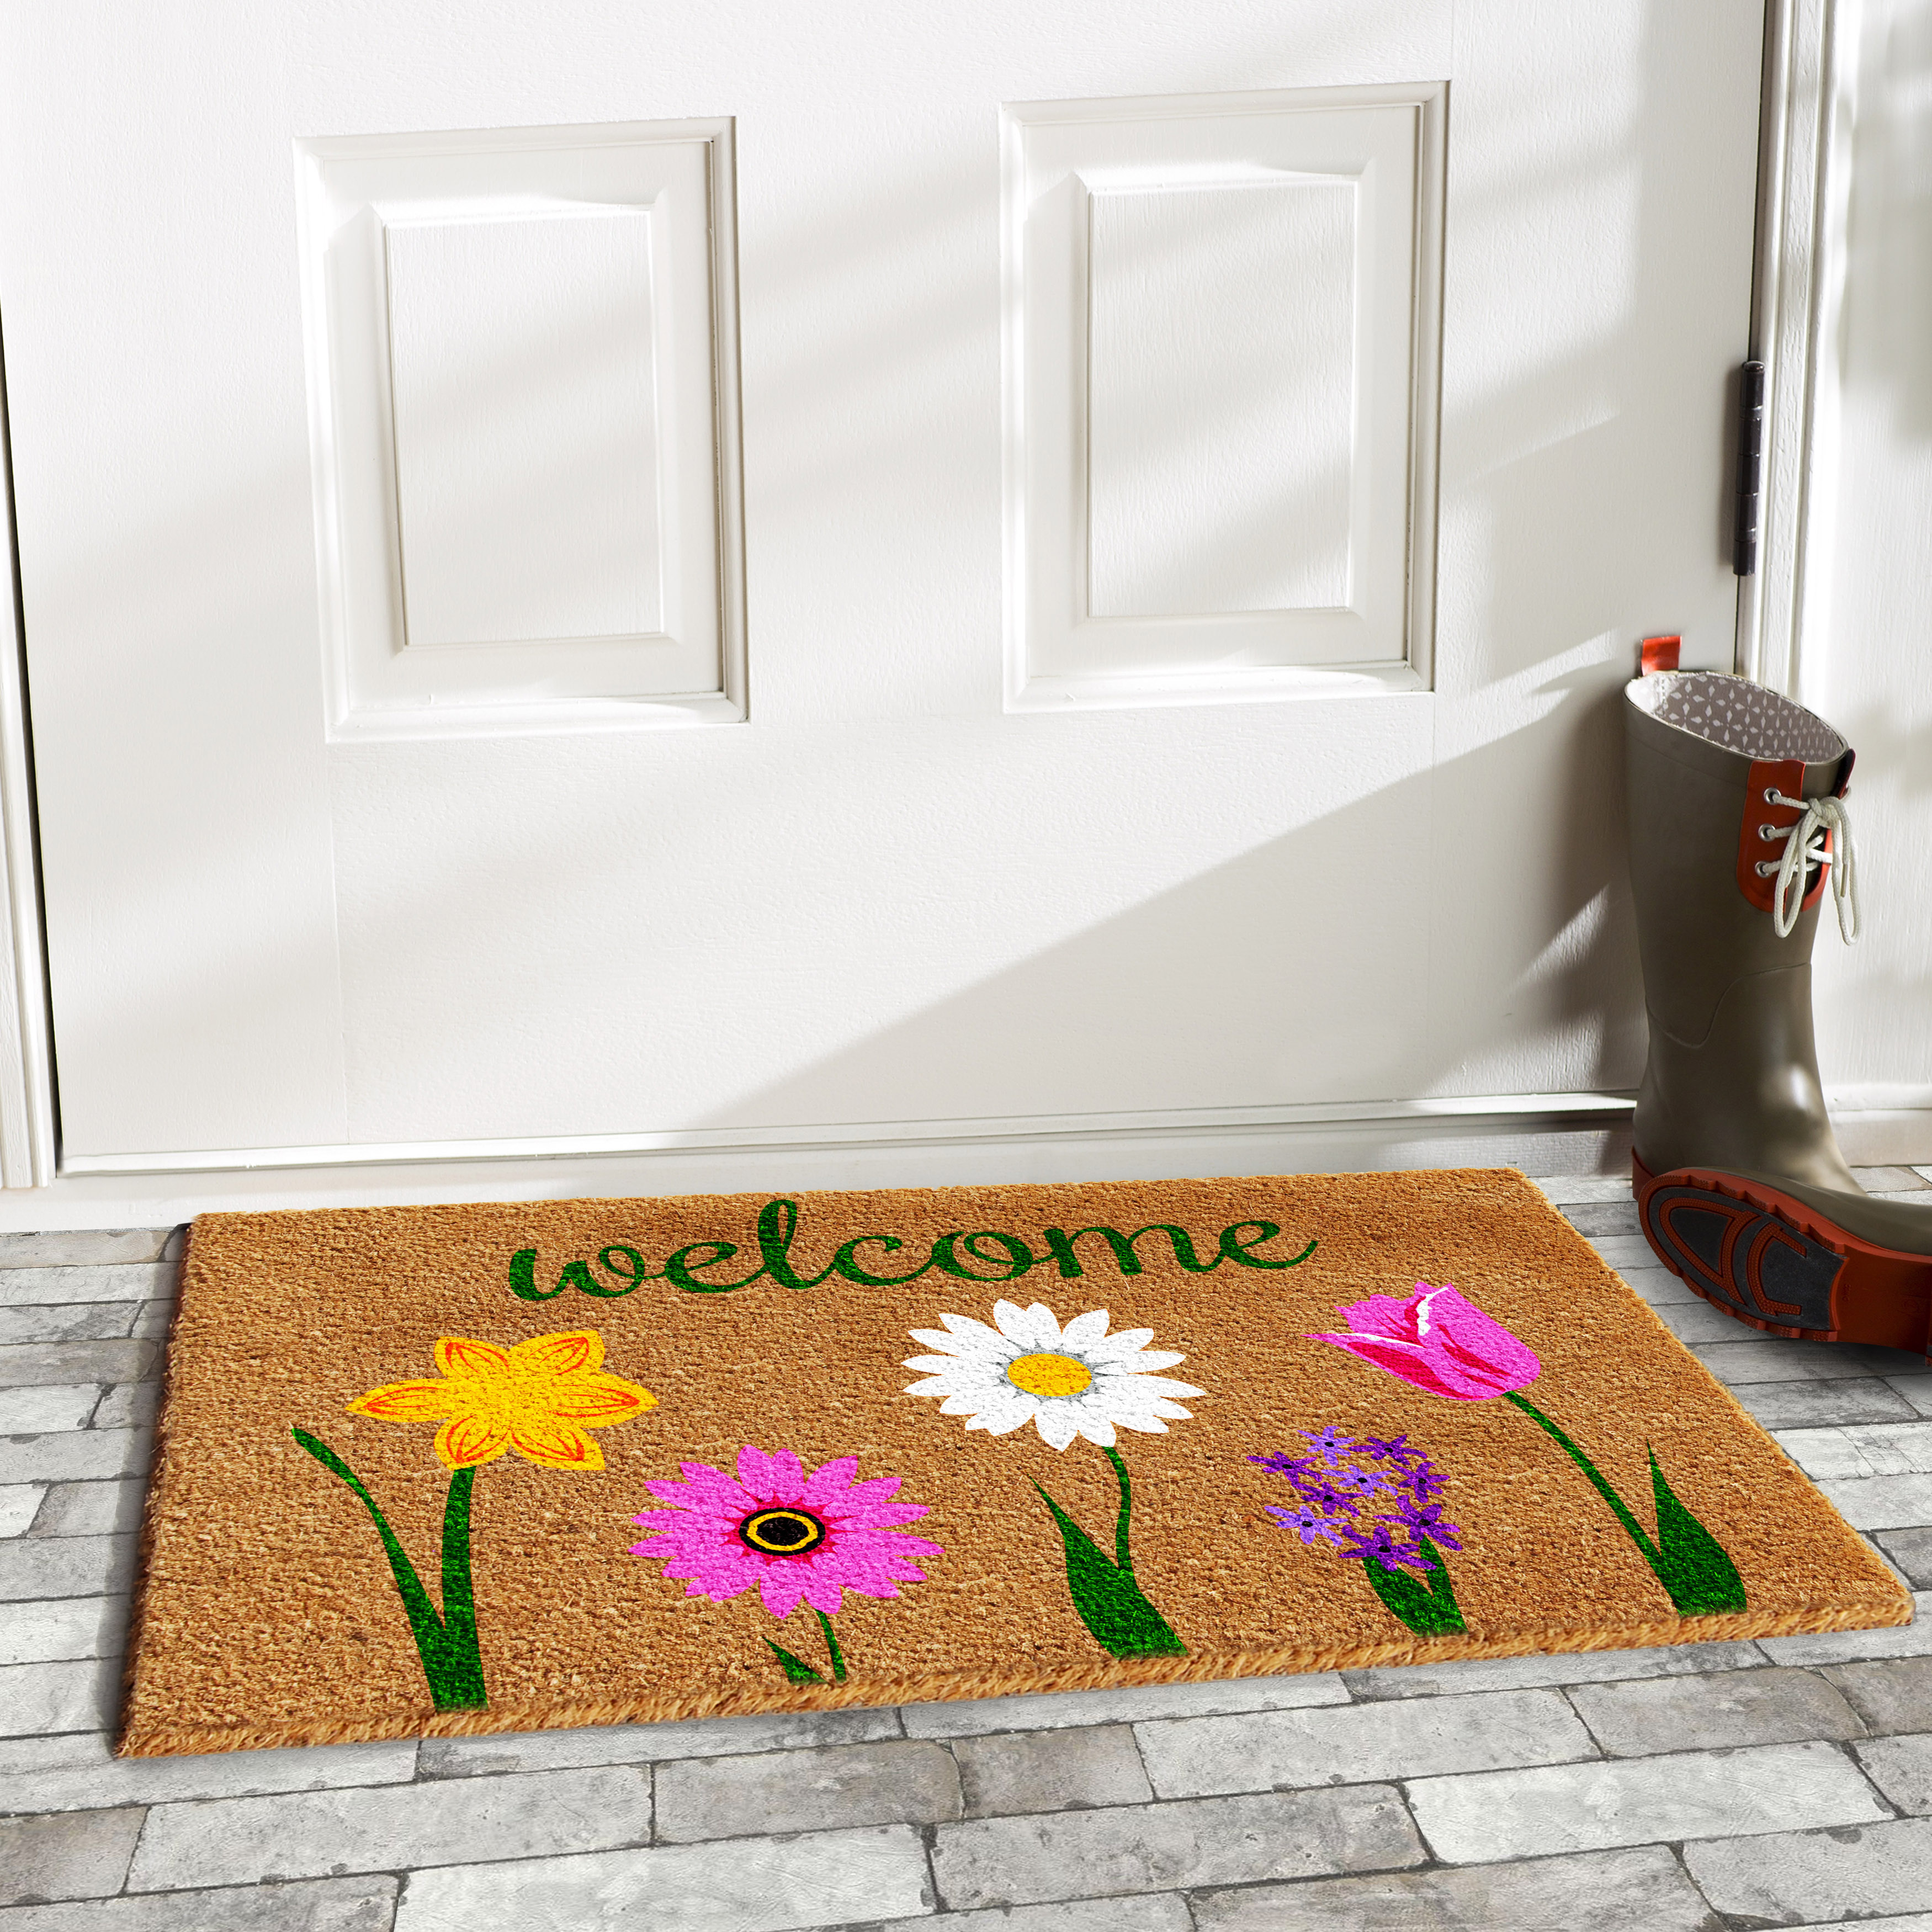 Calloway Mills Carmine Outdoor Doormat - image 2 of 2